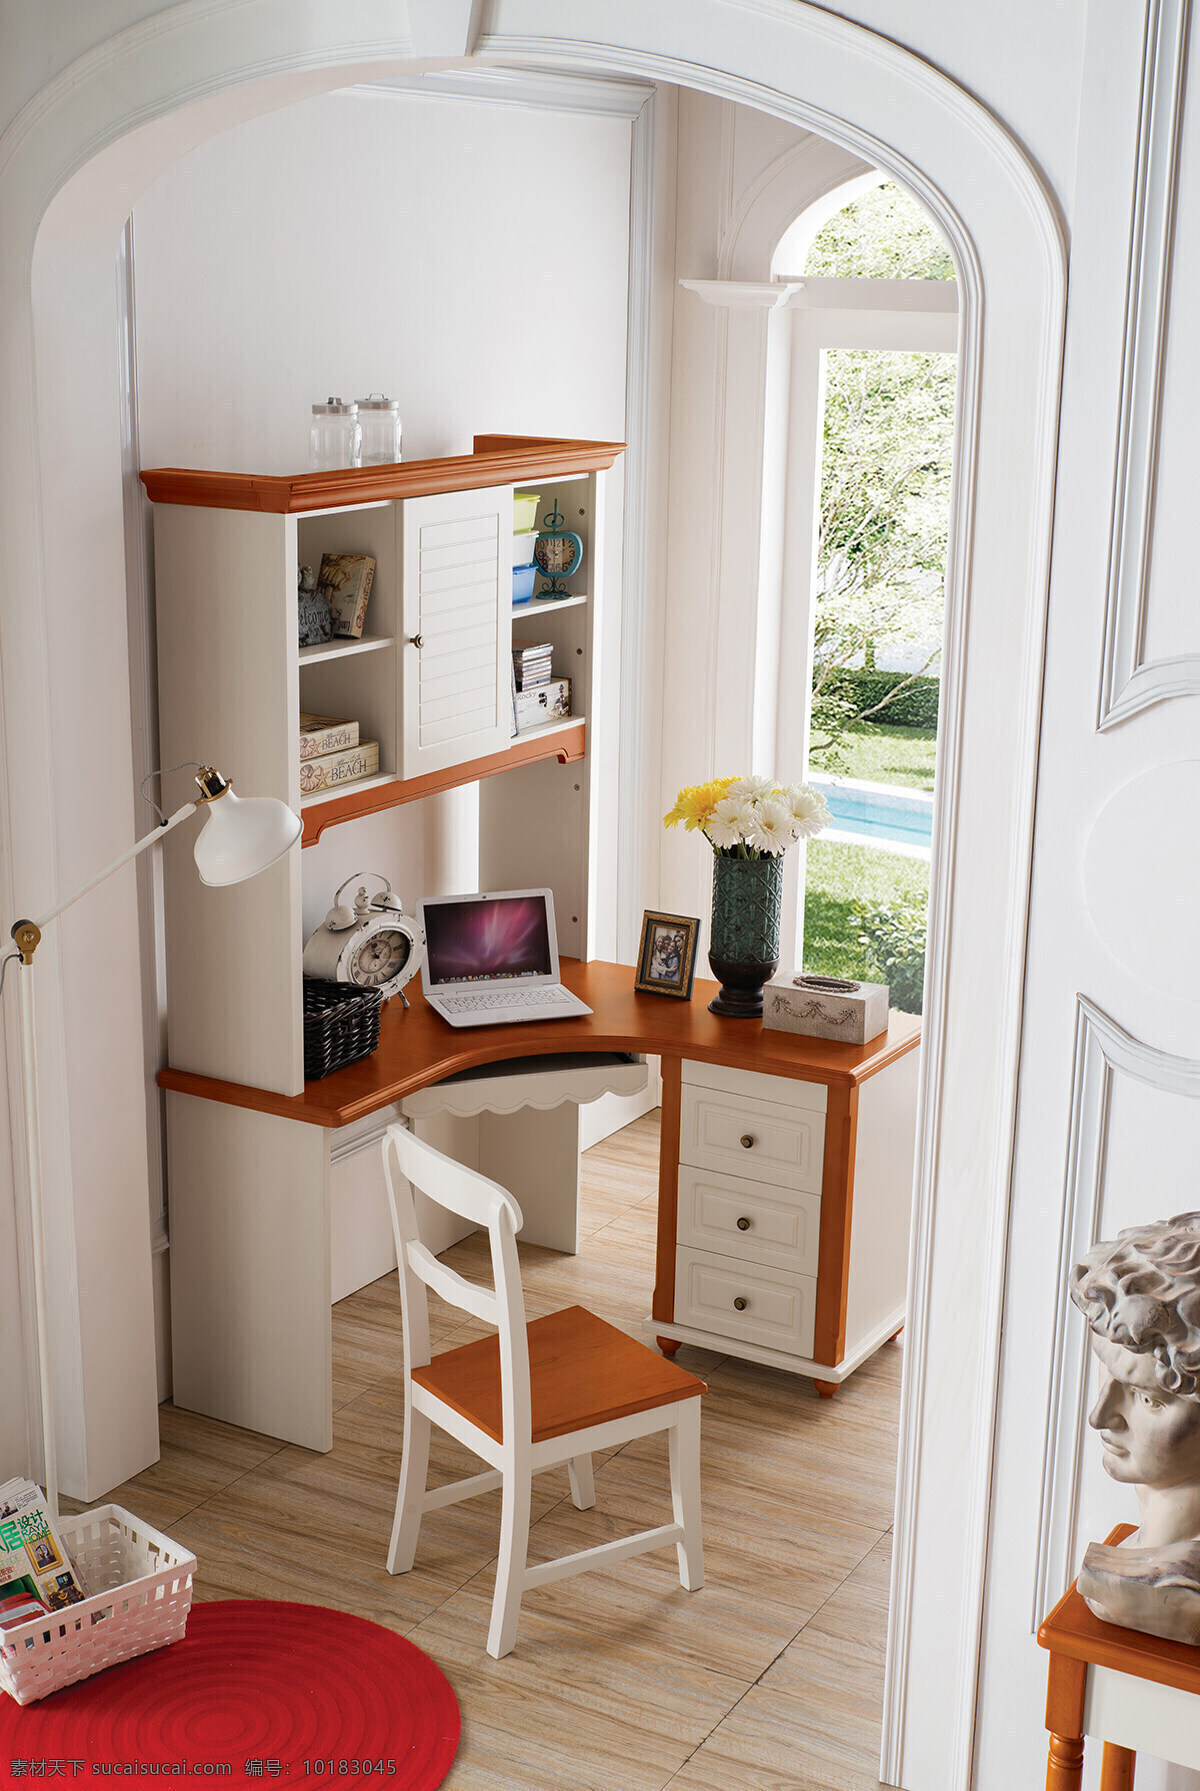 现代 简约 风格 书房 3d 渲染 效果图 室内设计 书桌 书柜 椅子